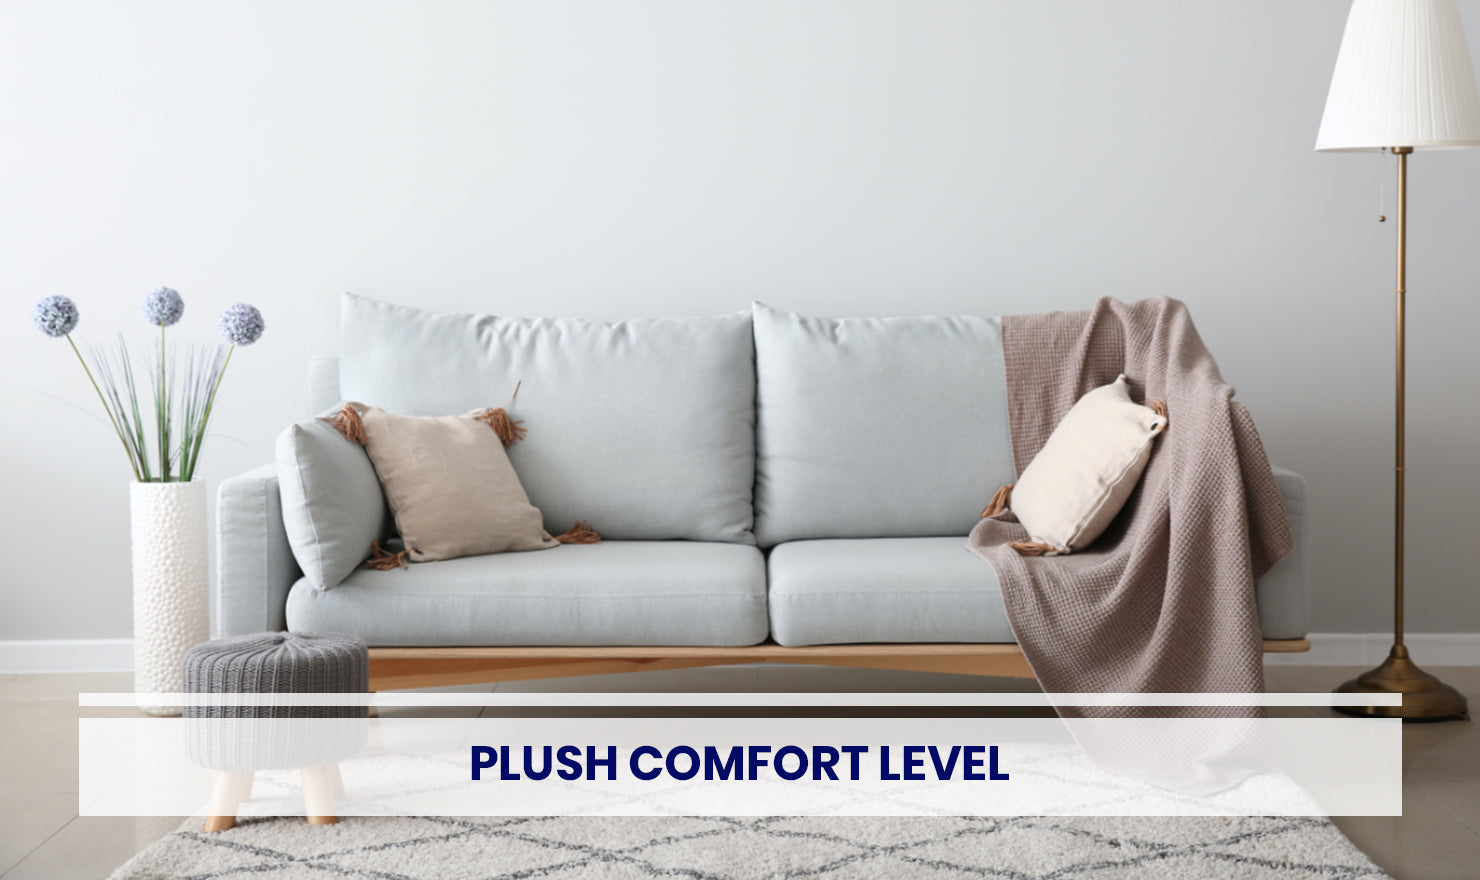 Plush comfort level